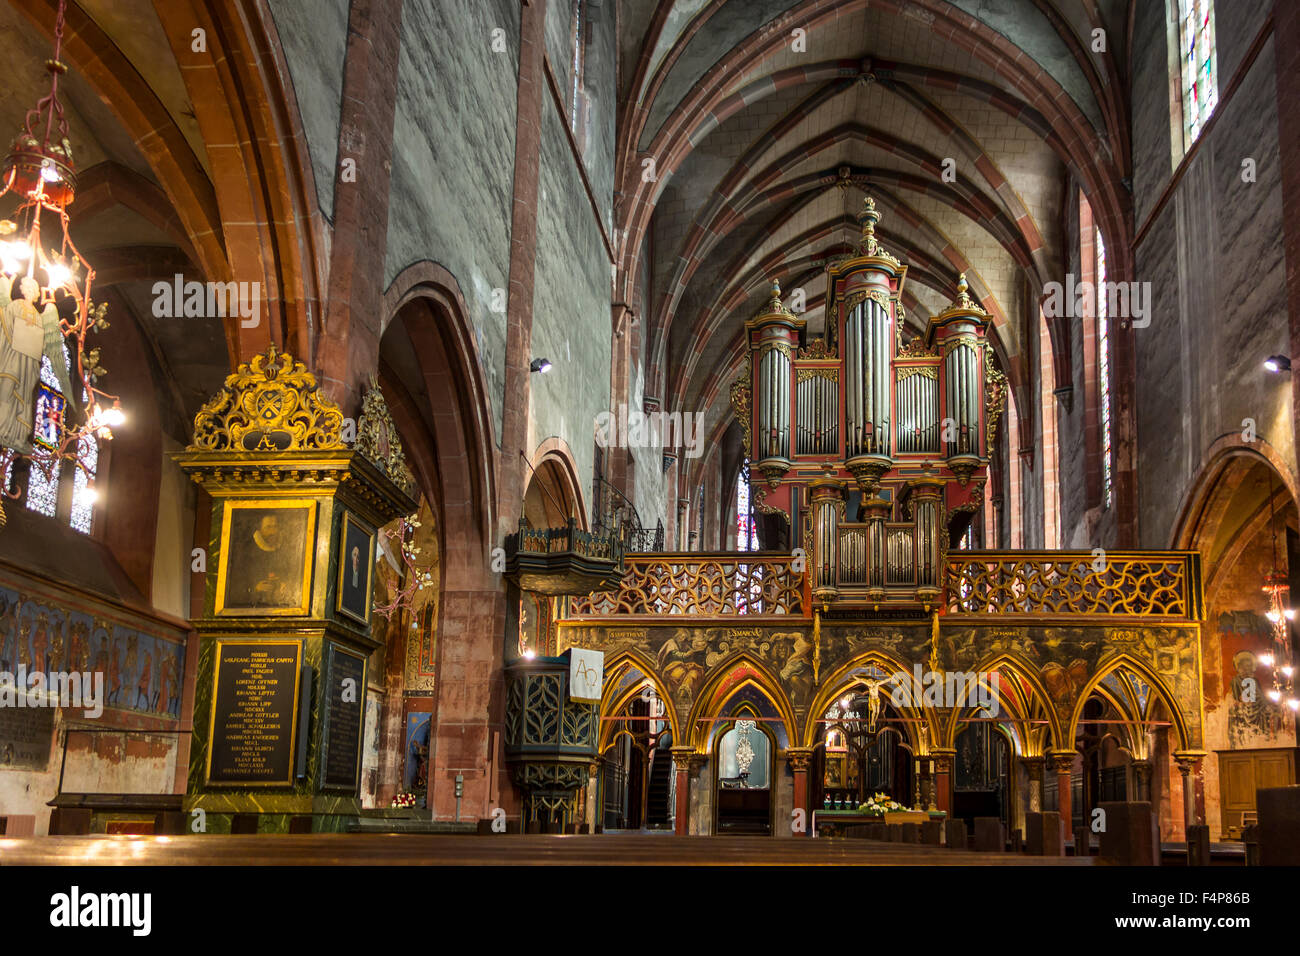 Coro schermo / rood schermo e organo a canne di Saint-Pierre-le-Jeune Chiesa protestante di Strasburgo, Alsazia, Francia Foto Stock